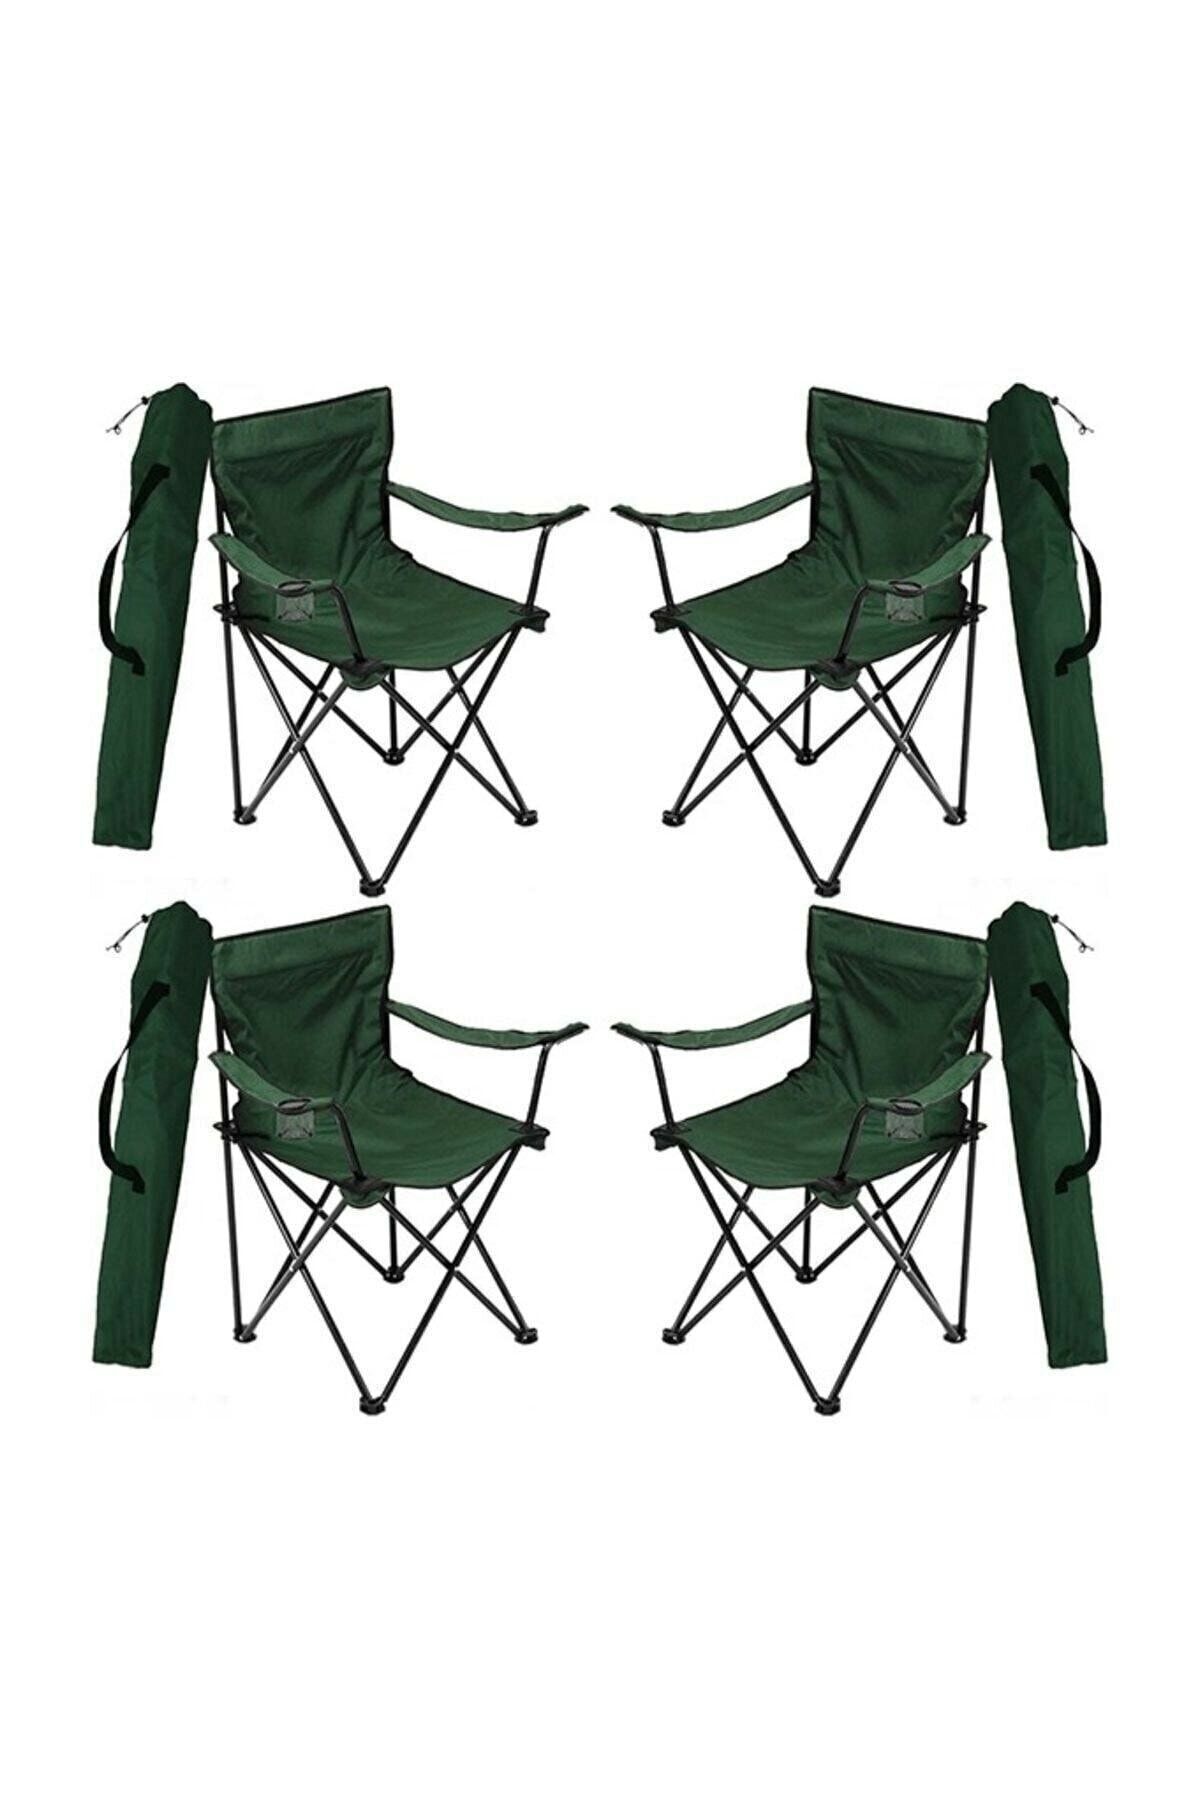 4 Adet Kamp Sandalyesi Katlanır Sandalye Bahçe Koltuğu Piknik Plaj Balkon Sandalyesi Yeşil